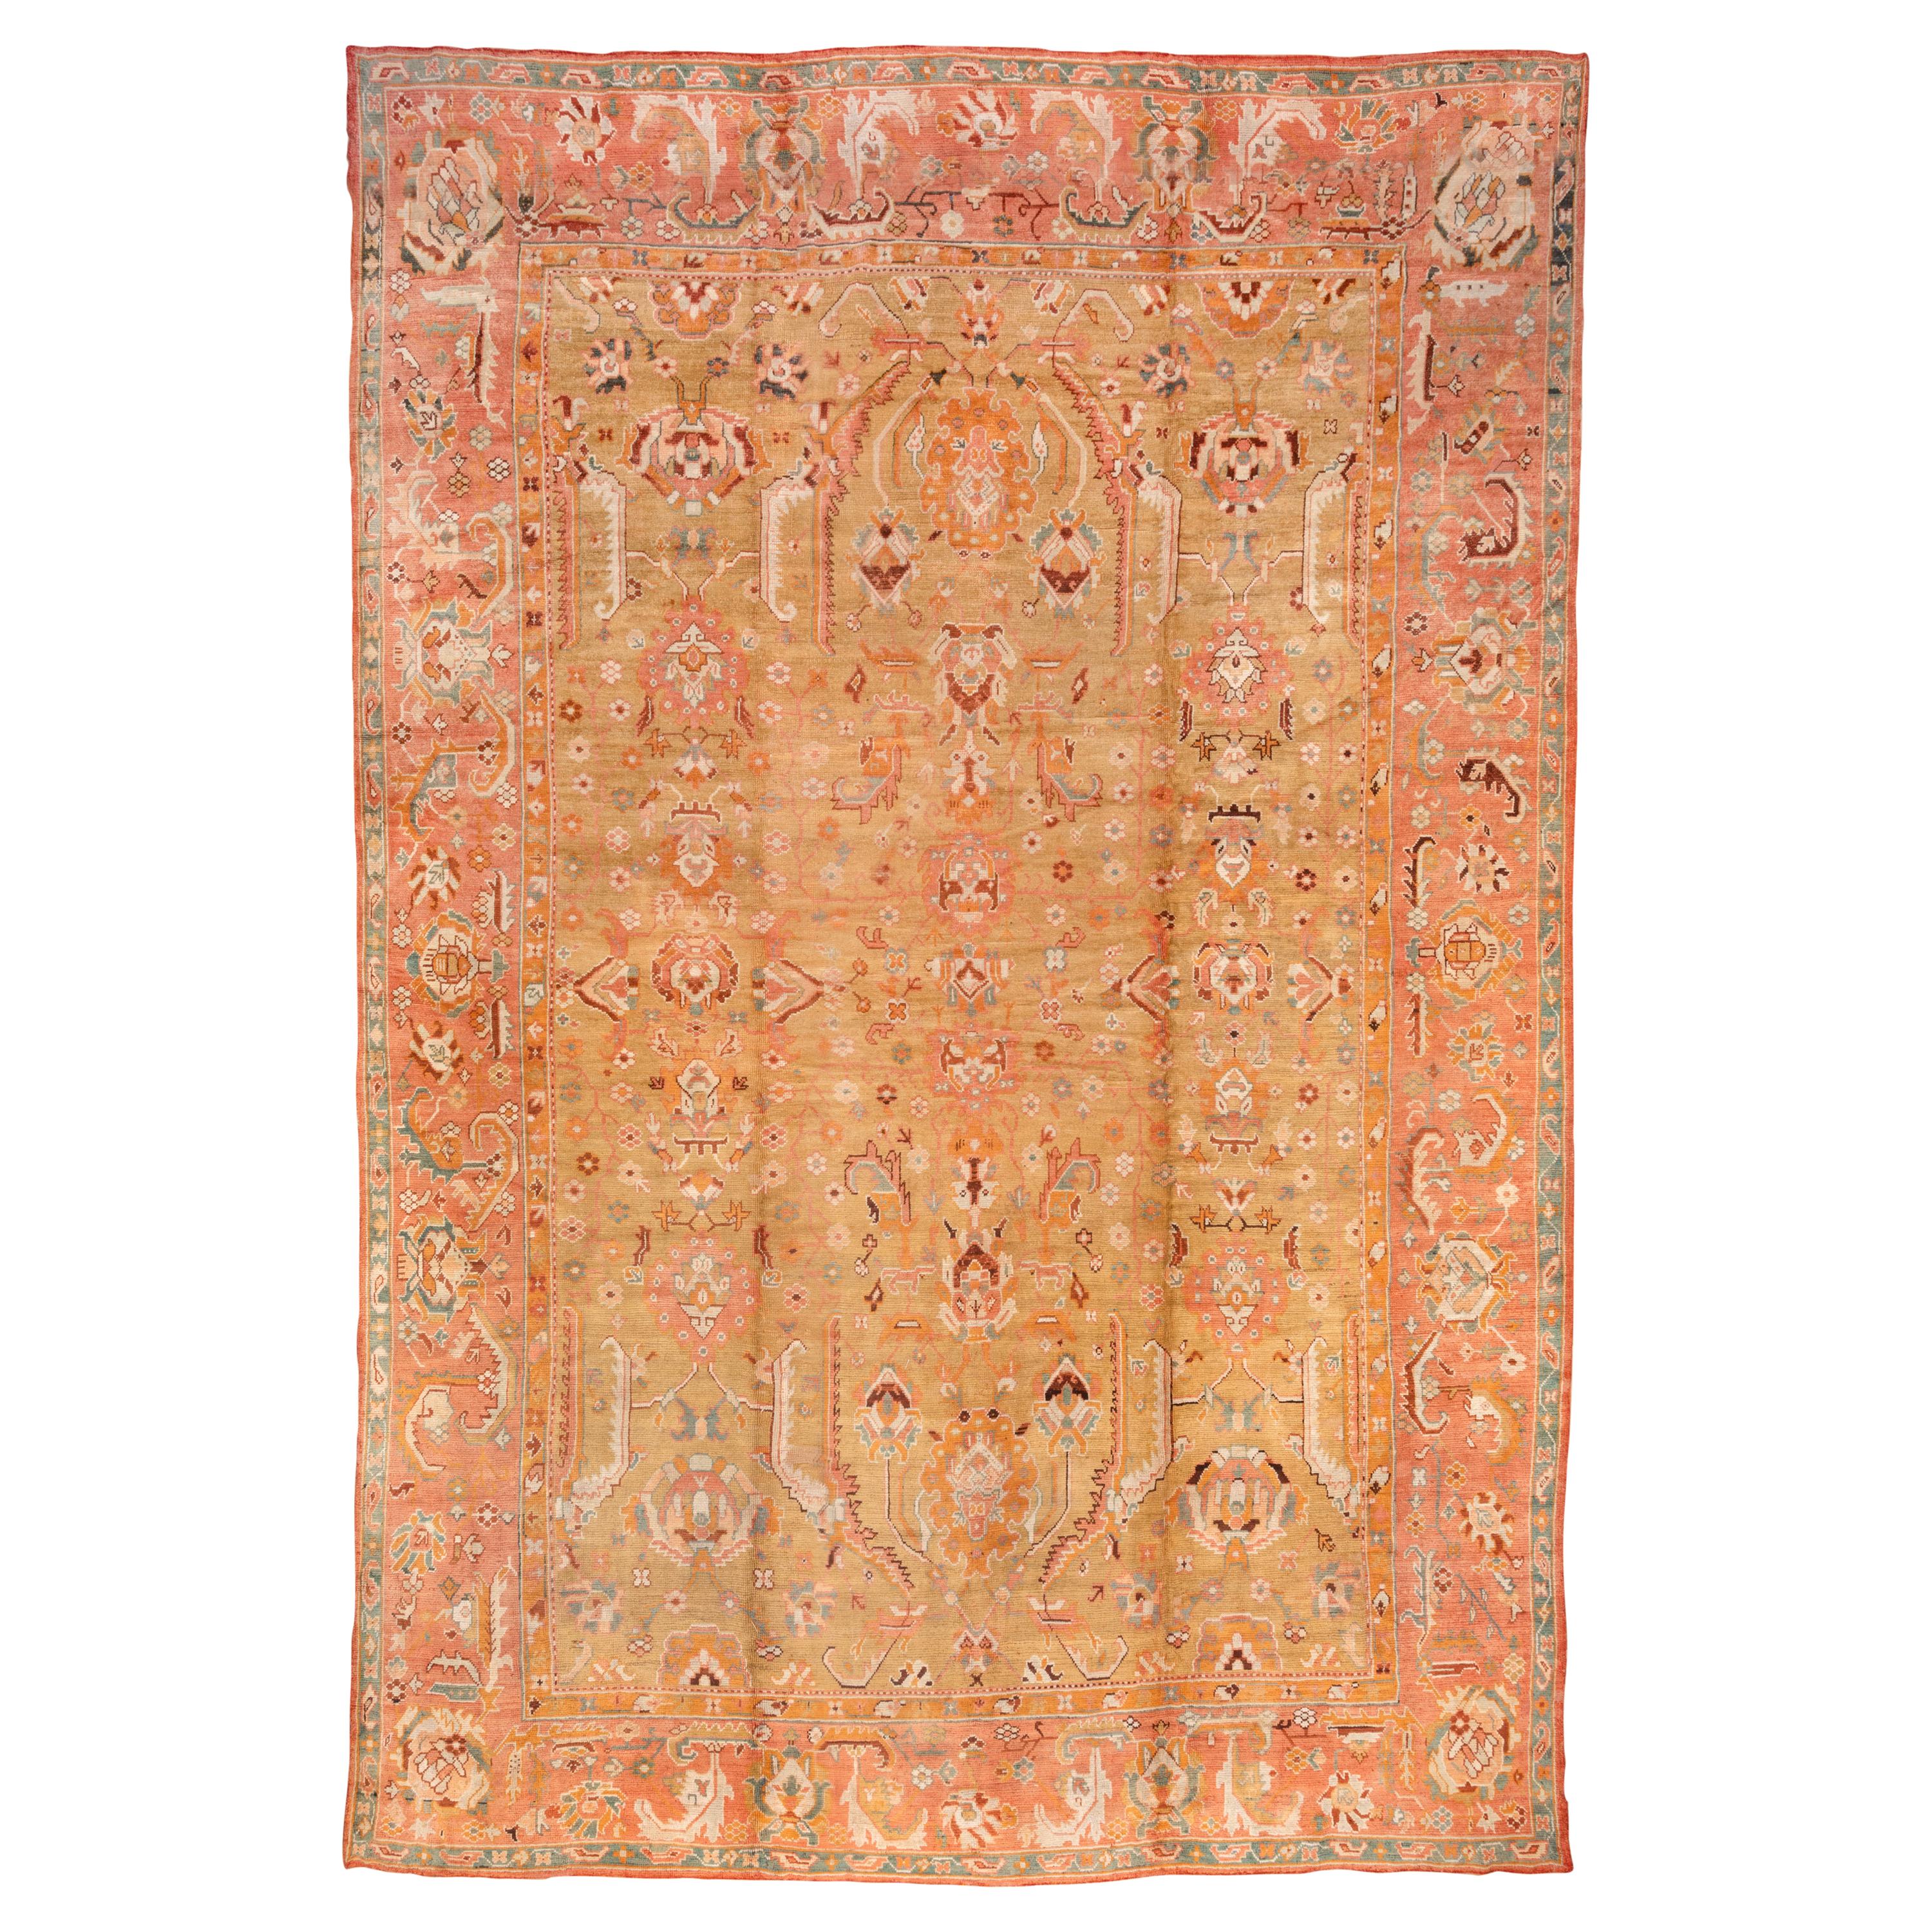 Antique tapis turc Oushak:: champ jaune:: bordures roses:: bordure colorée